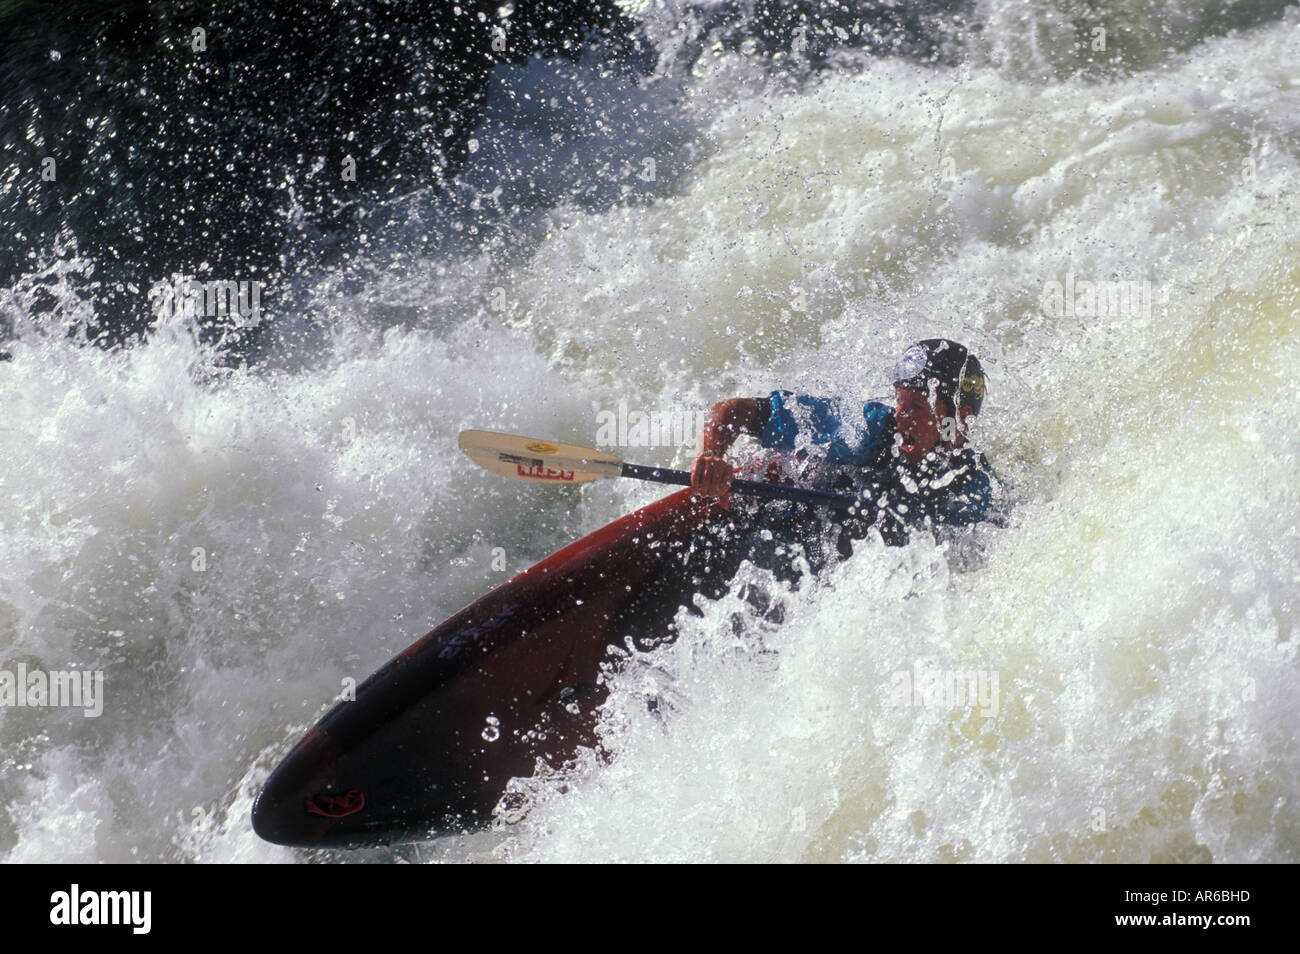 Whitewater kayaker, Gore Canyon, Colorado River, Colorado Stock Photo